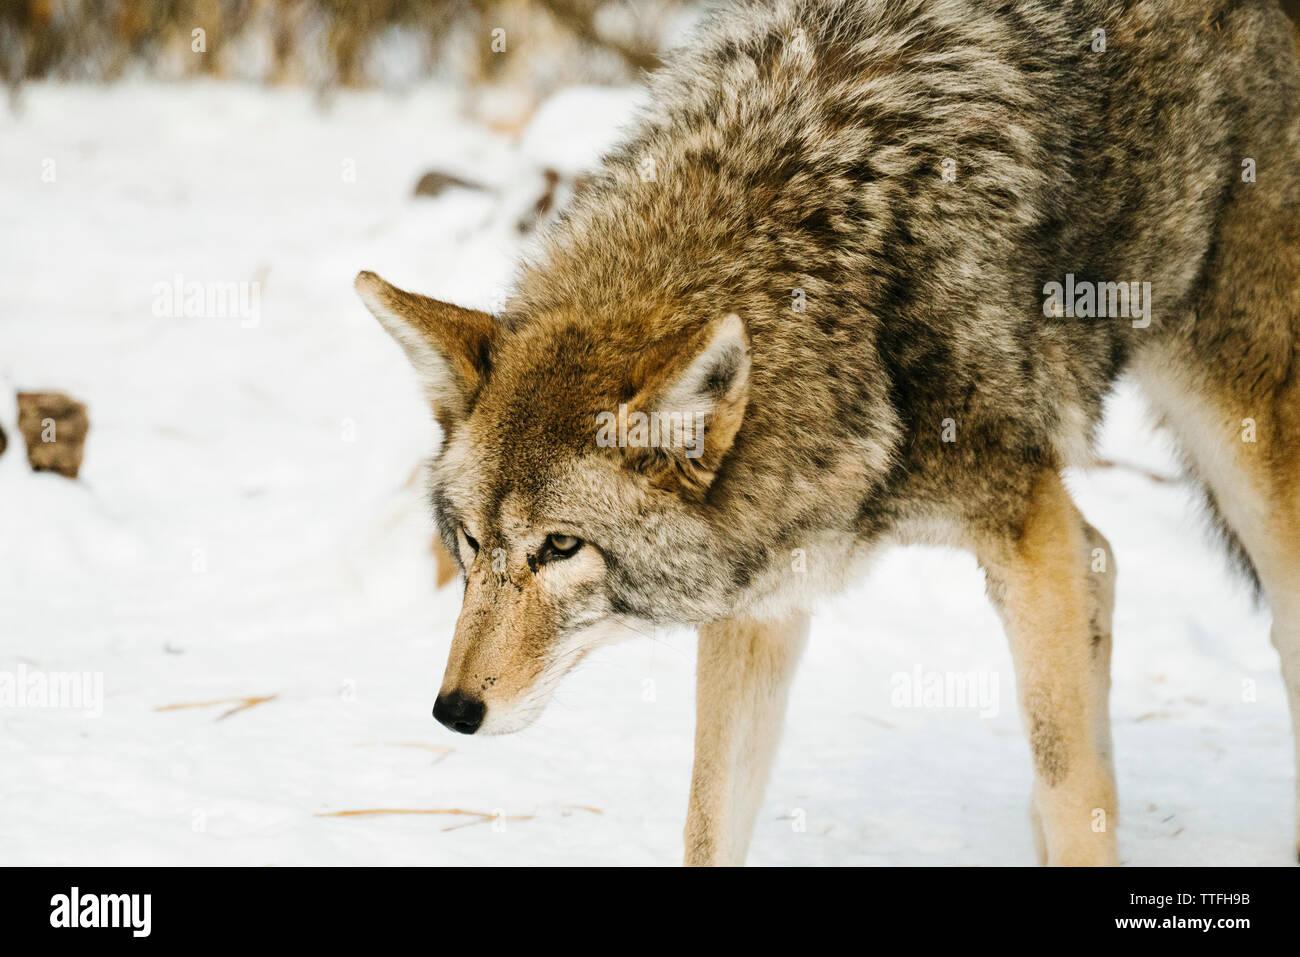 Vue latérale d'un coyote debout dans la neige Banque D'Images